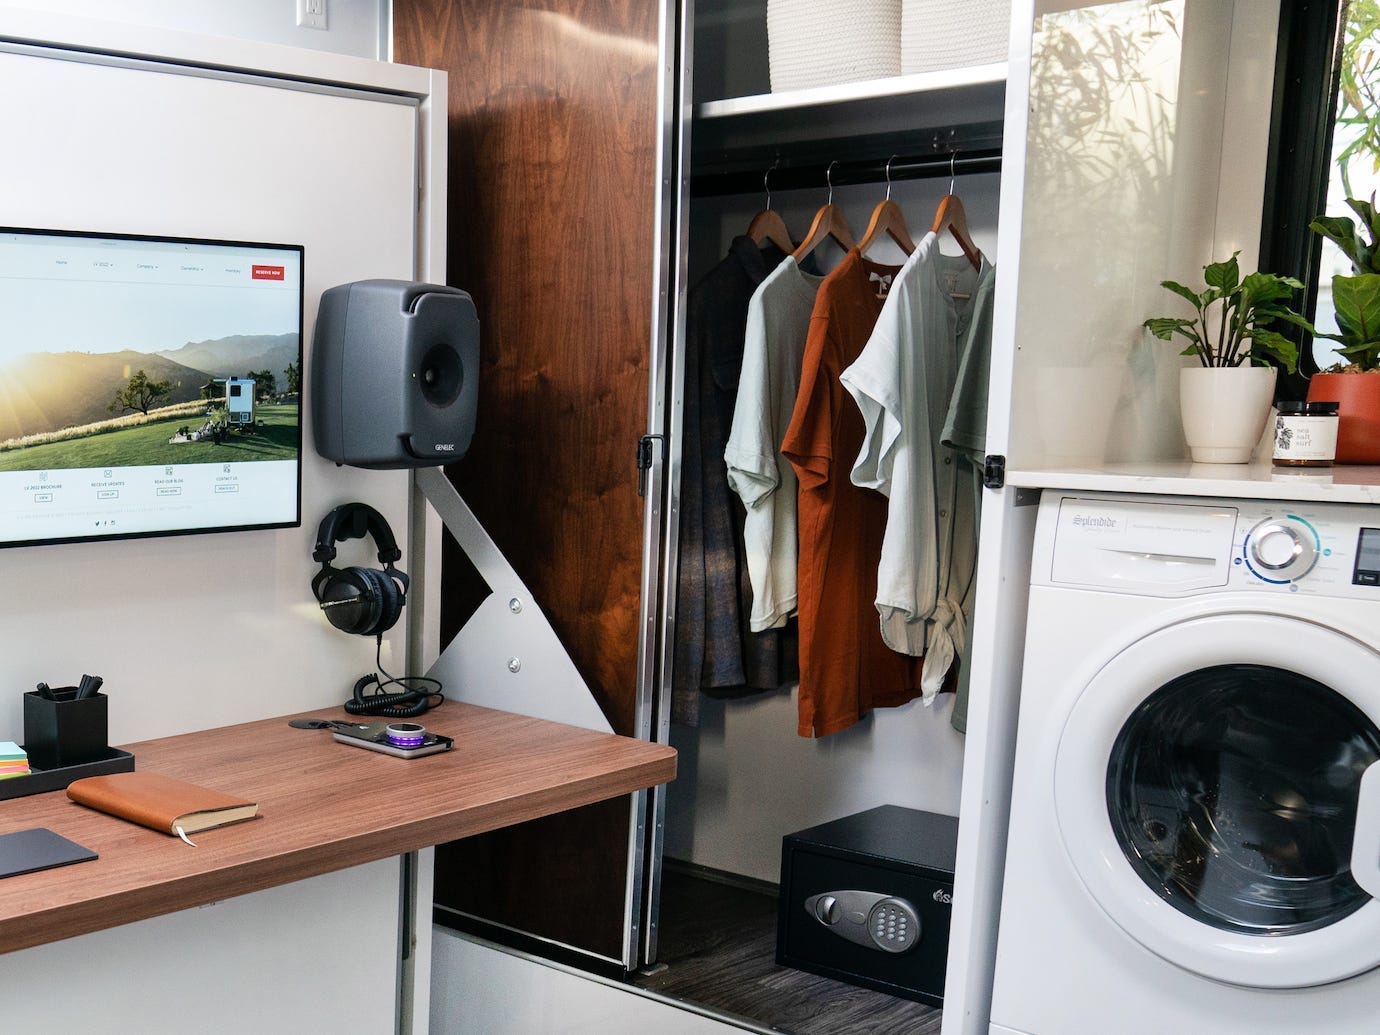 Een kantoorruimte met Apple producten zoals een laptop naast een wasmachine, kast.